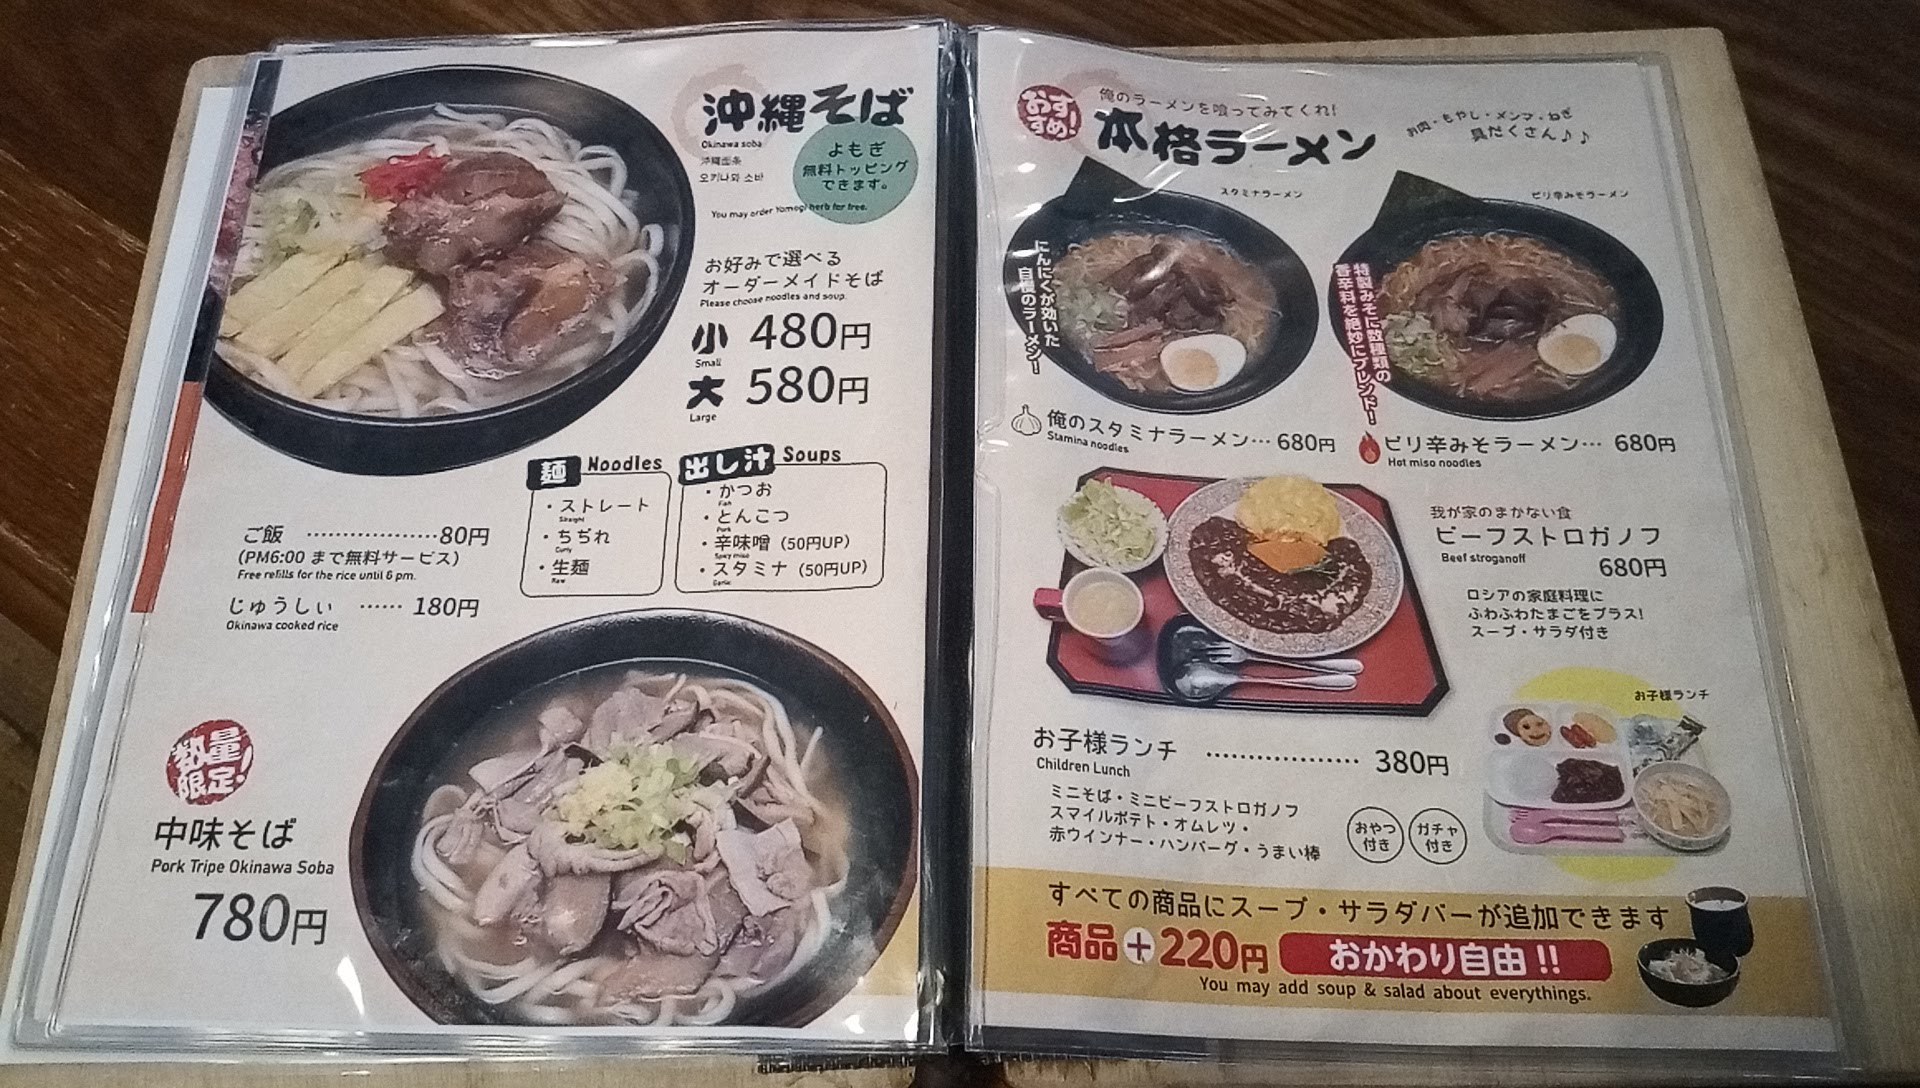 the menu of Goat and Soba Taiyo 4